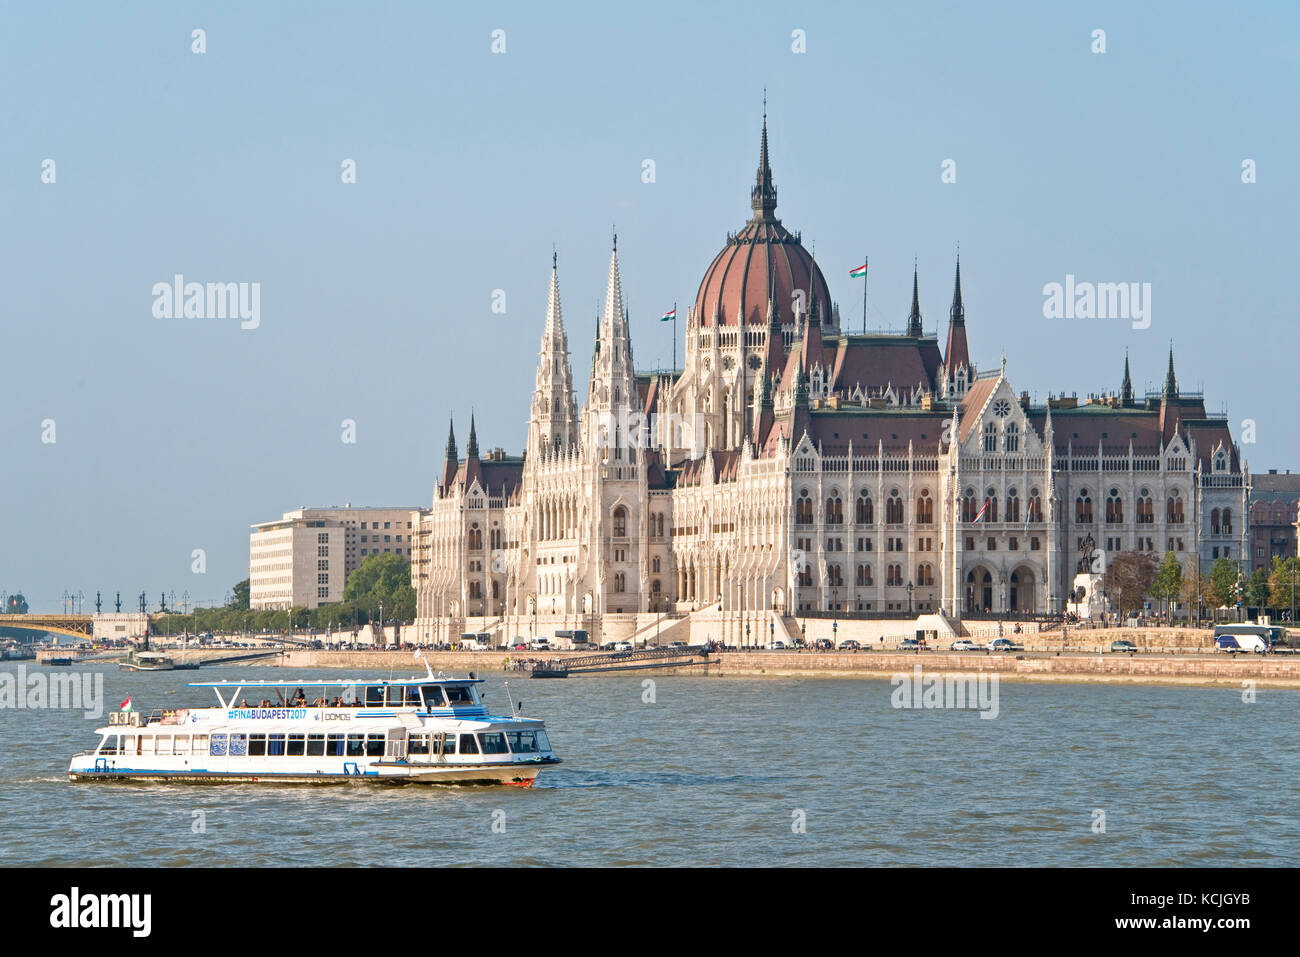 Ein Blick auf das ungarische Parlamentsgebäude an der Donau in Budapest mit einem Flussschiff, das an einem sonnigen Tag mit blauem Himmel vorbeifährt. Stockfoto